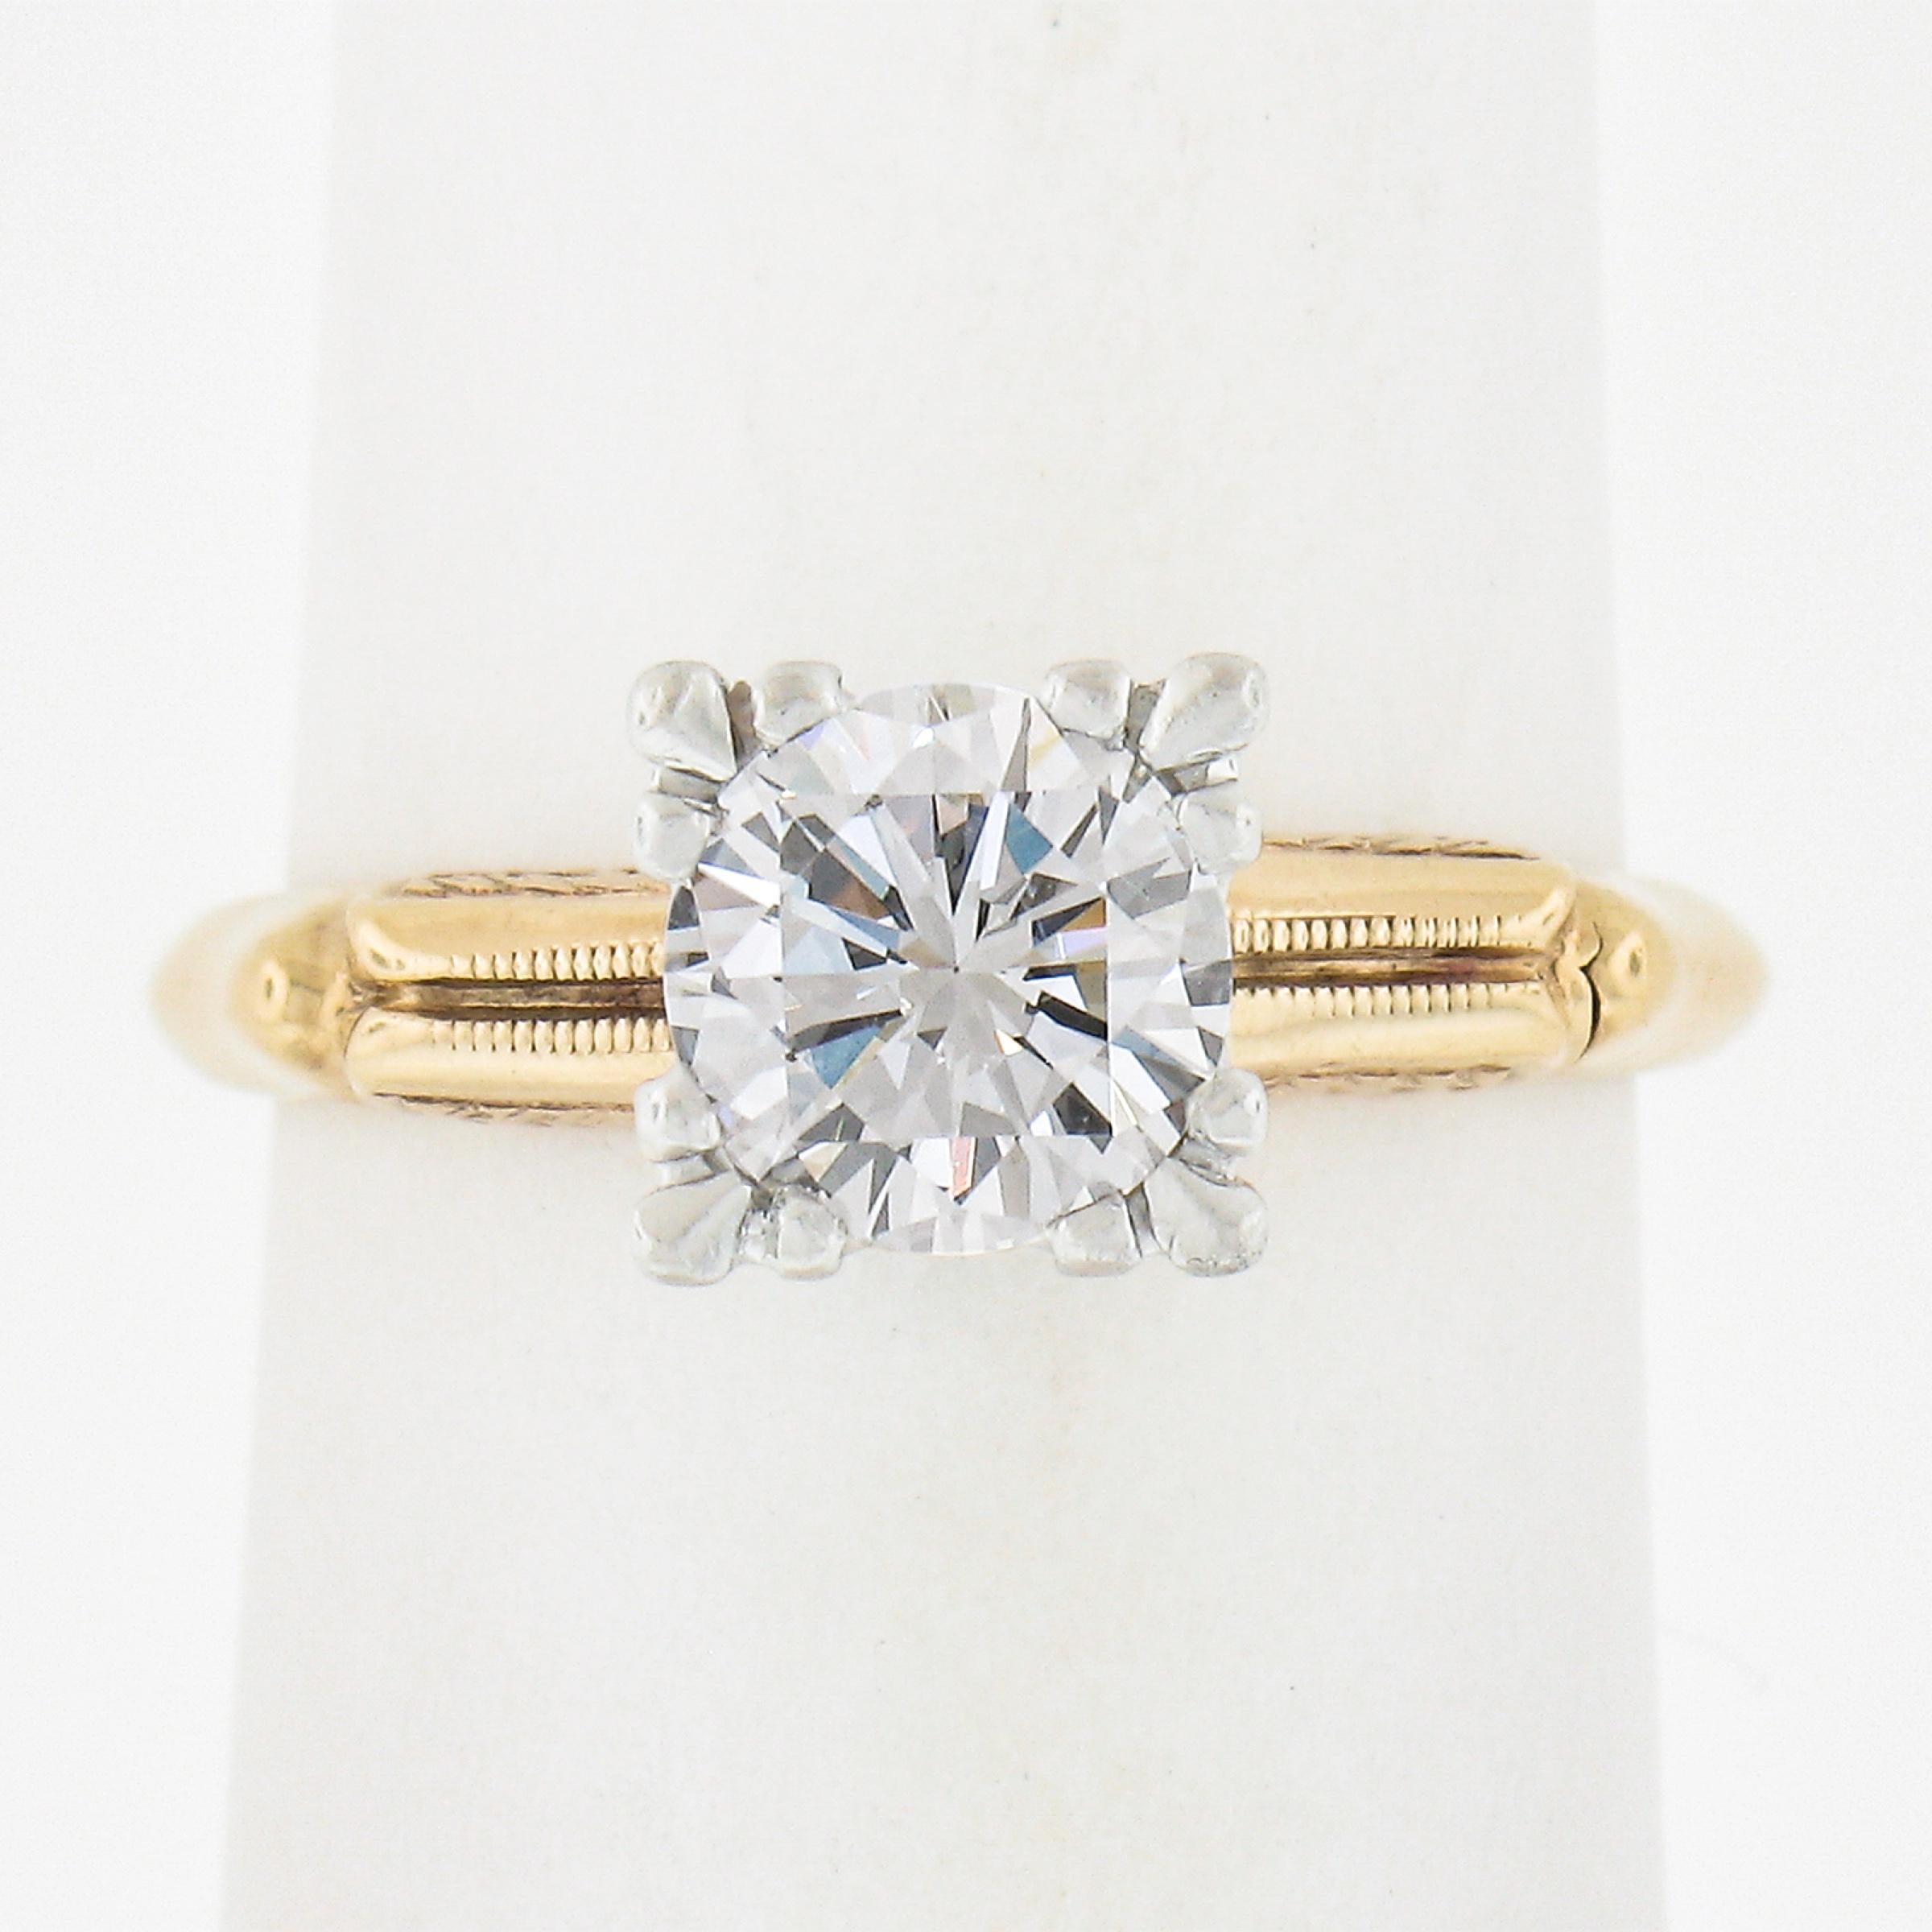 Hier haben wir einen originalen Vintage-Verlobungsring. Der Diamant ist in jeder Hinsicht perfekt und strahlt eine enorme Brillanz aus! Der Originalkopf und der Ring sind immer noch in ausgezeichnetem Zustand und können noch jahrzehntelang genutzt